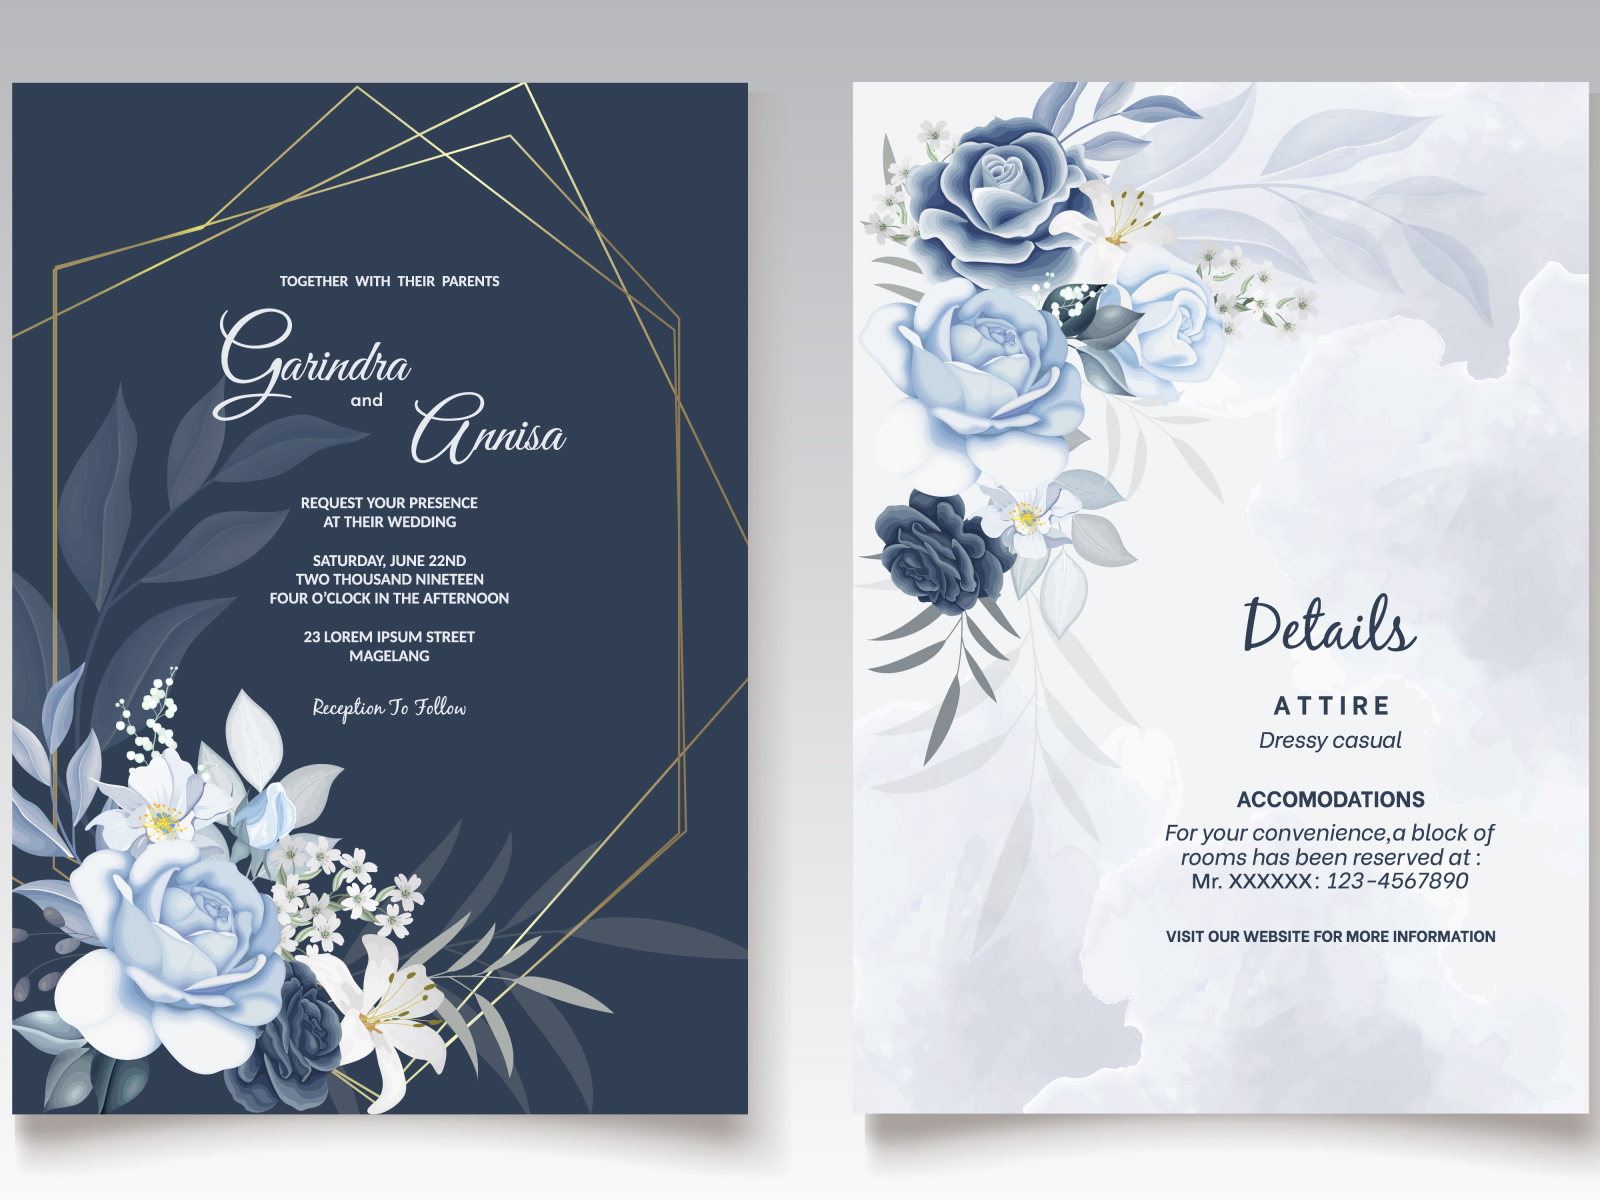 Hình ảnh thiệp cưới đơn giản mà thanh lịch với hoa lá màu xanh đậm sẽ khiến bạn liền mê tít. Thiết kế đẹp mắt này sẽ mang lại cho buổi cưới của bạn một nét đẹp đơn giản và tinh tế.